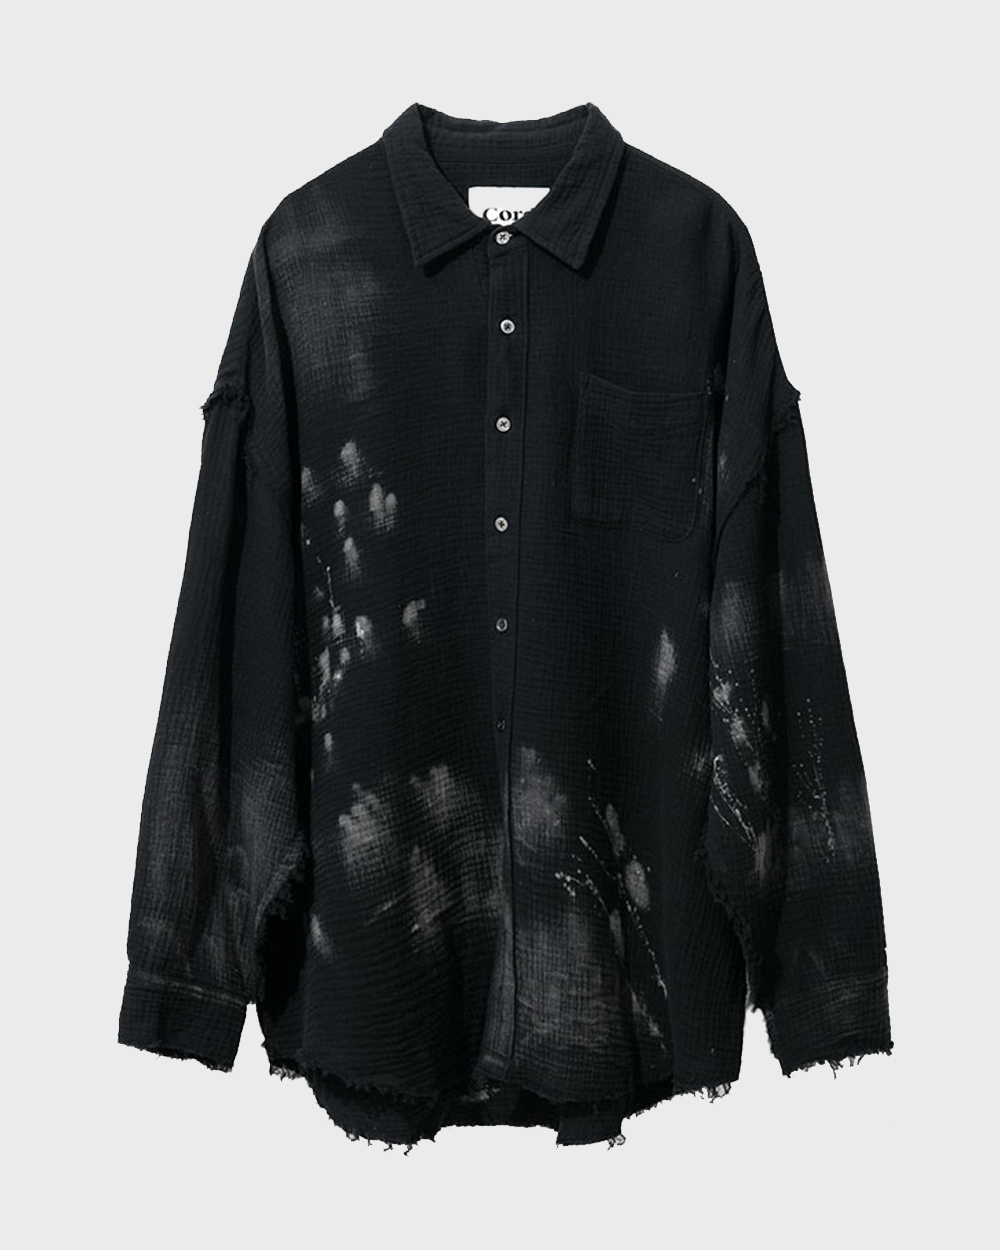 Dirty Washing Grunge Shirt (Black)